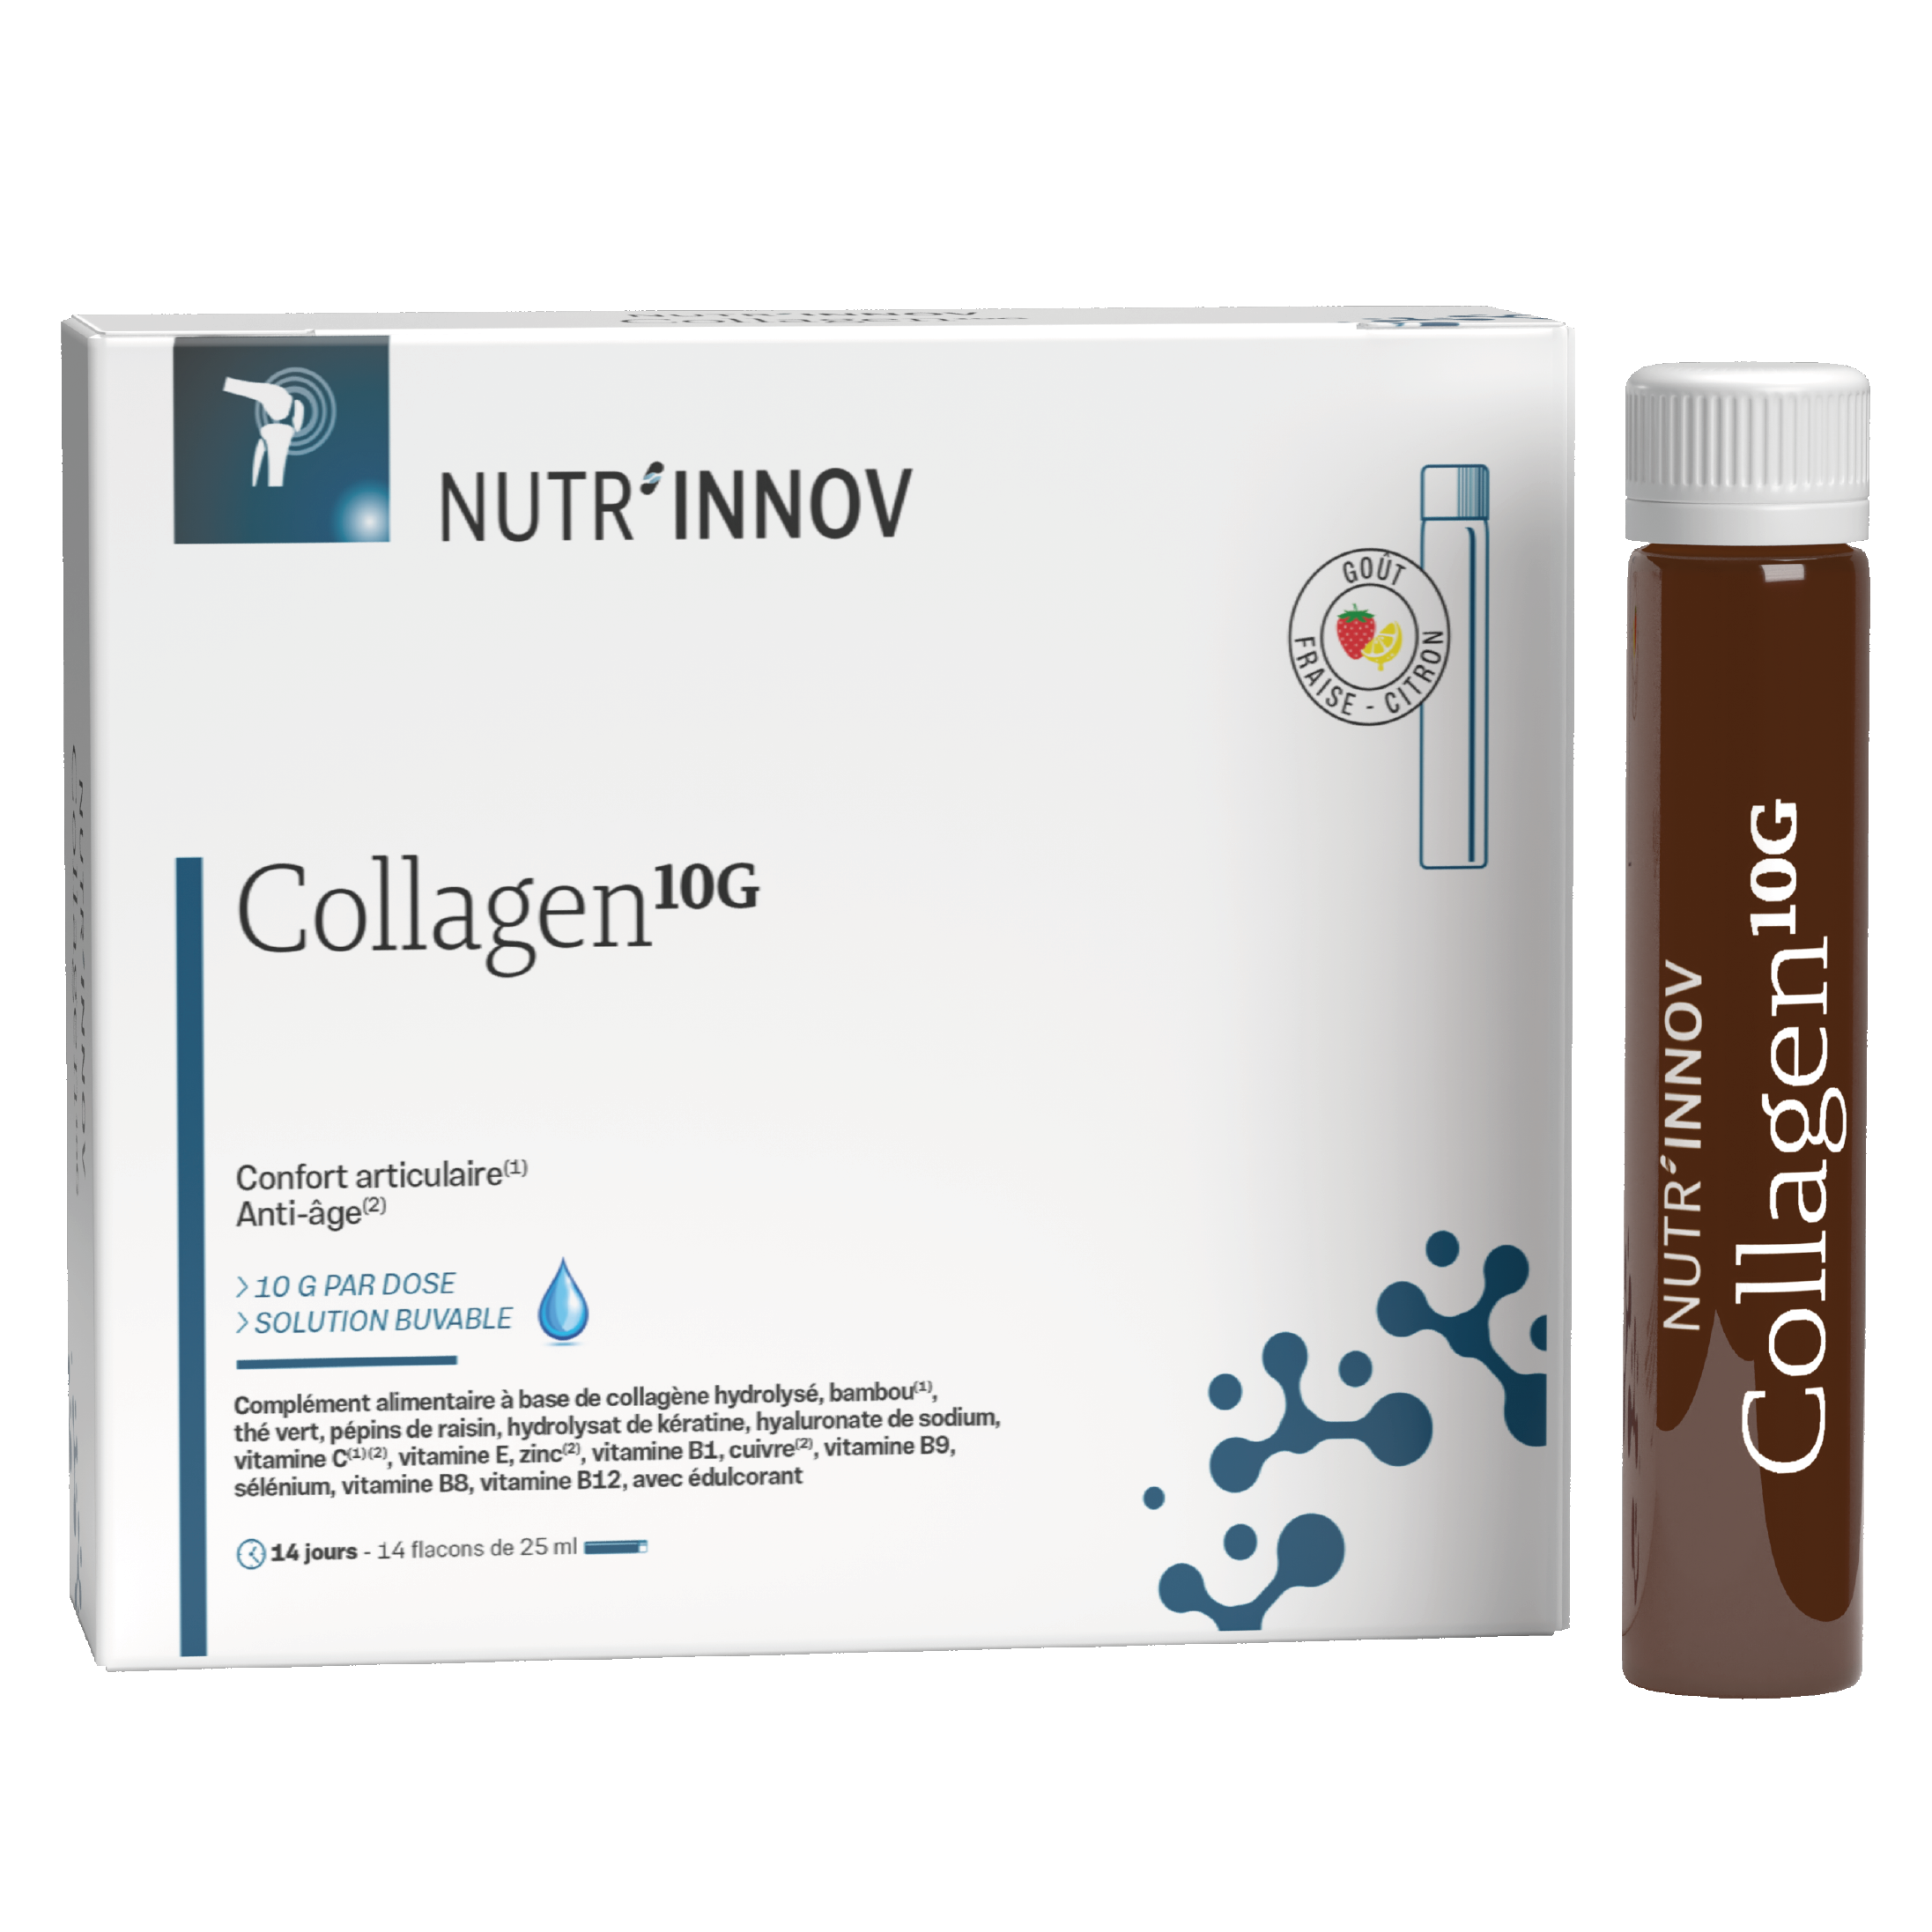 Collagen10G